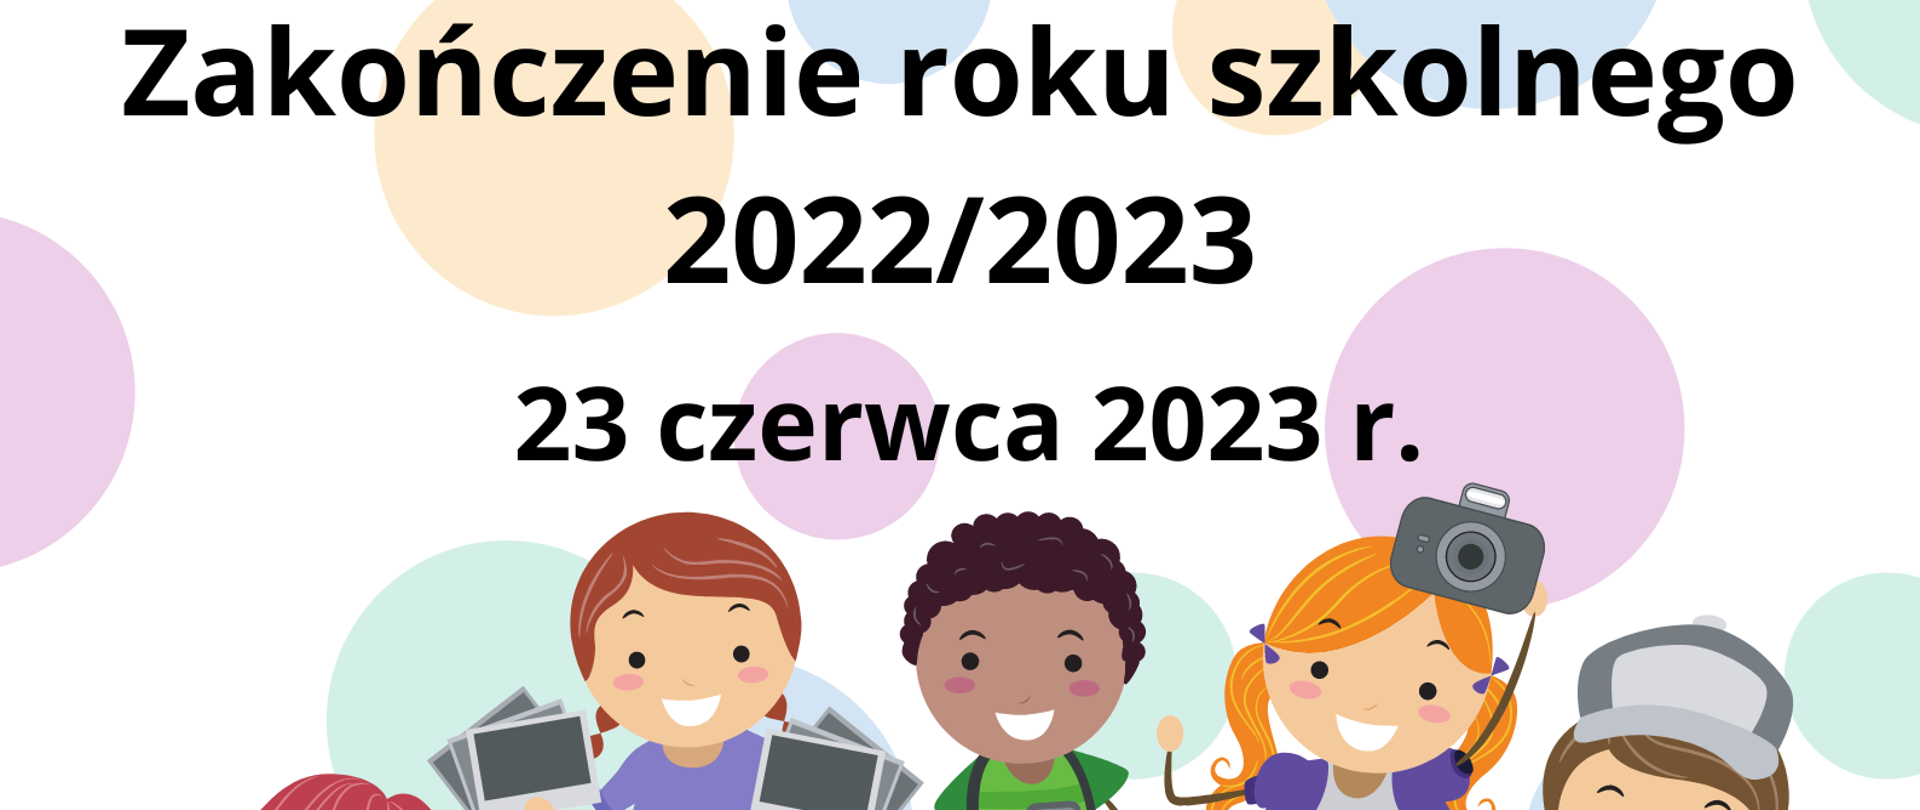 Zakończenie roku szkolnego 2022/2023 - Państwowa Szkoła Muzyczna I stopnia  w Lubinie - Portal Gov.pl